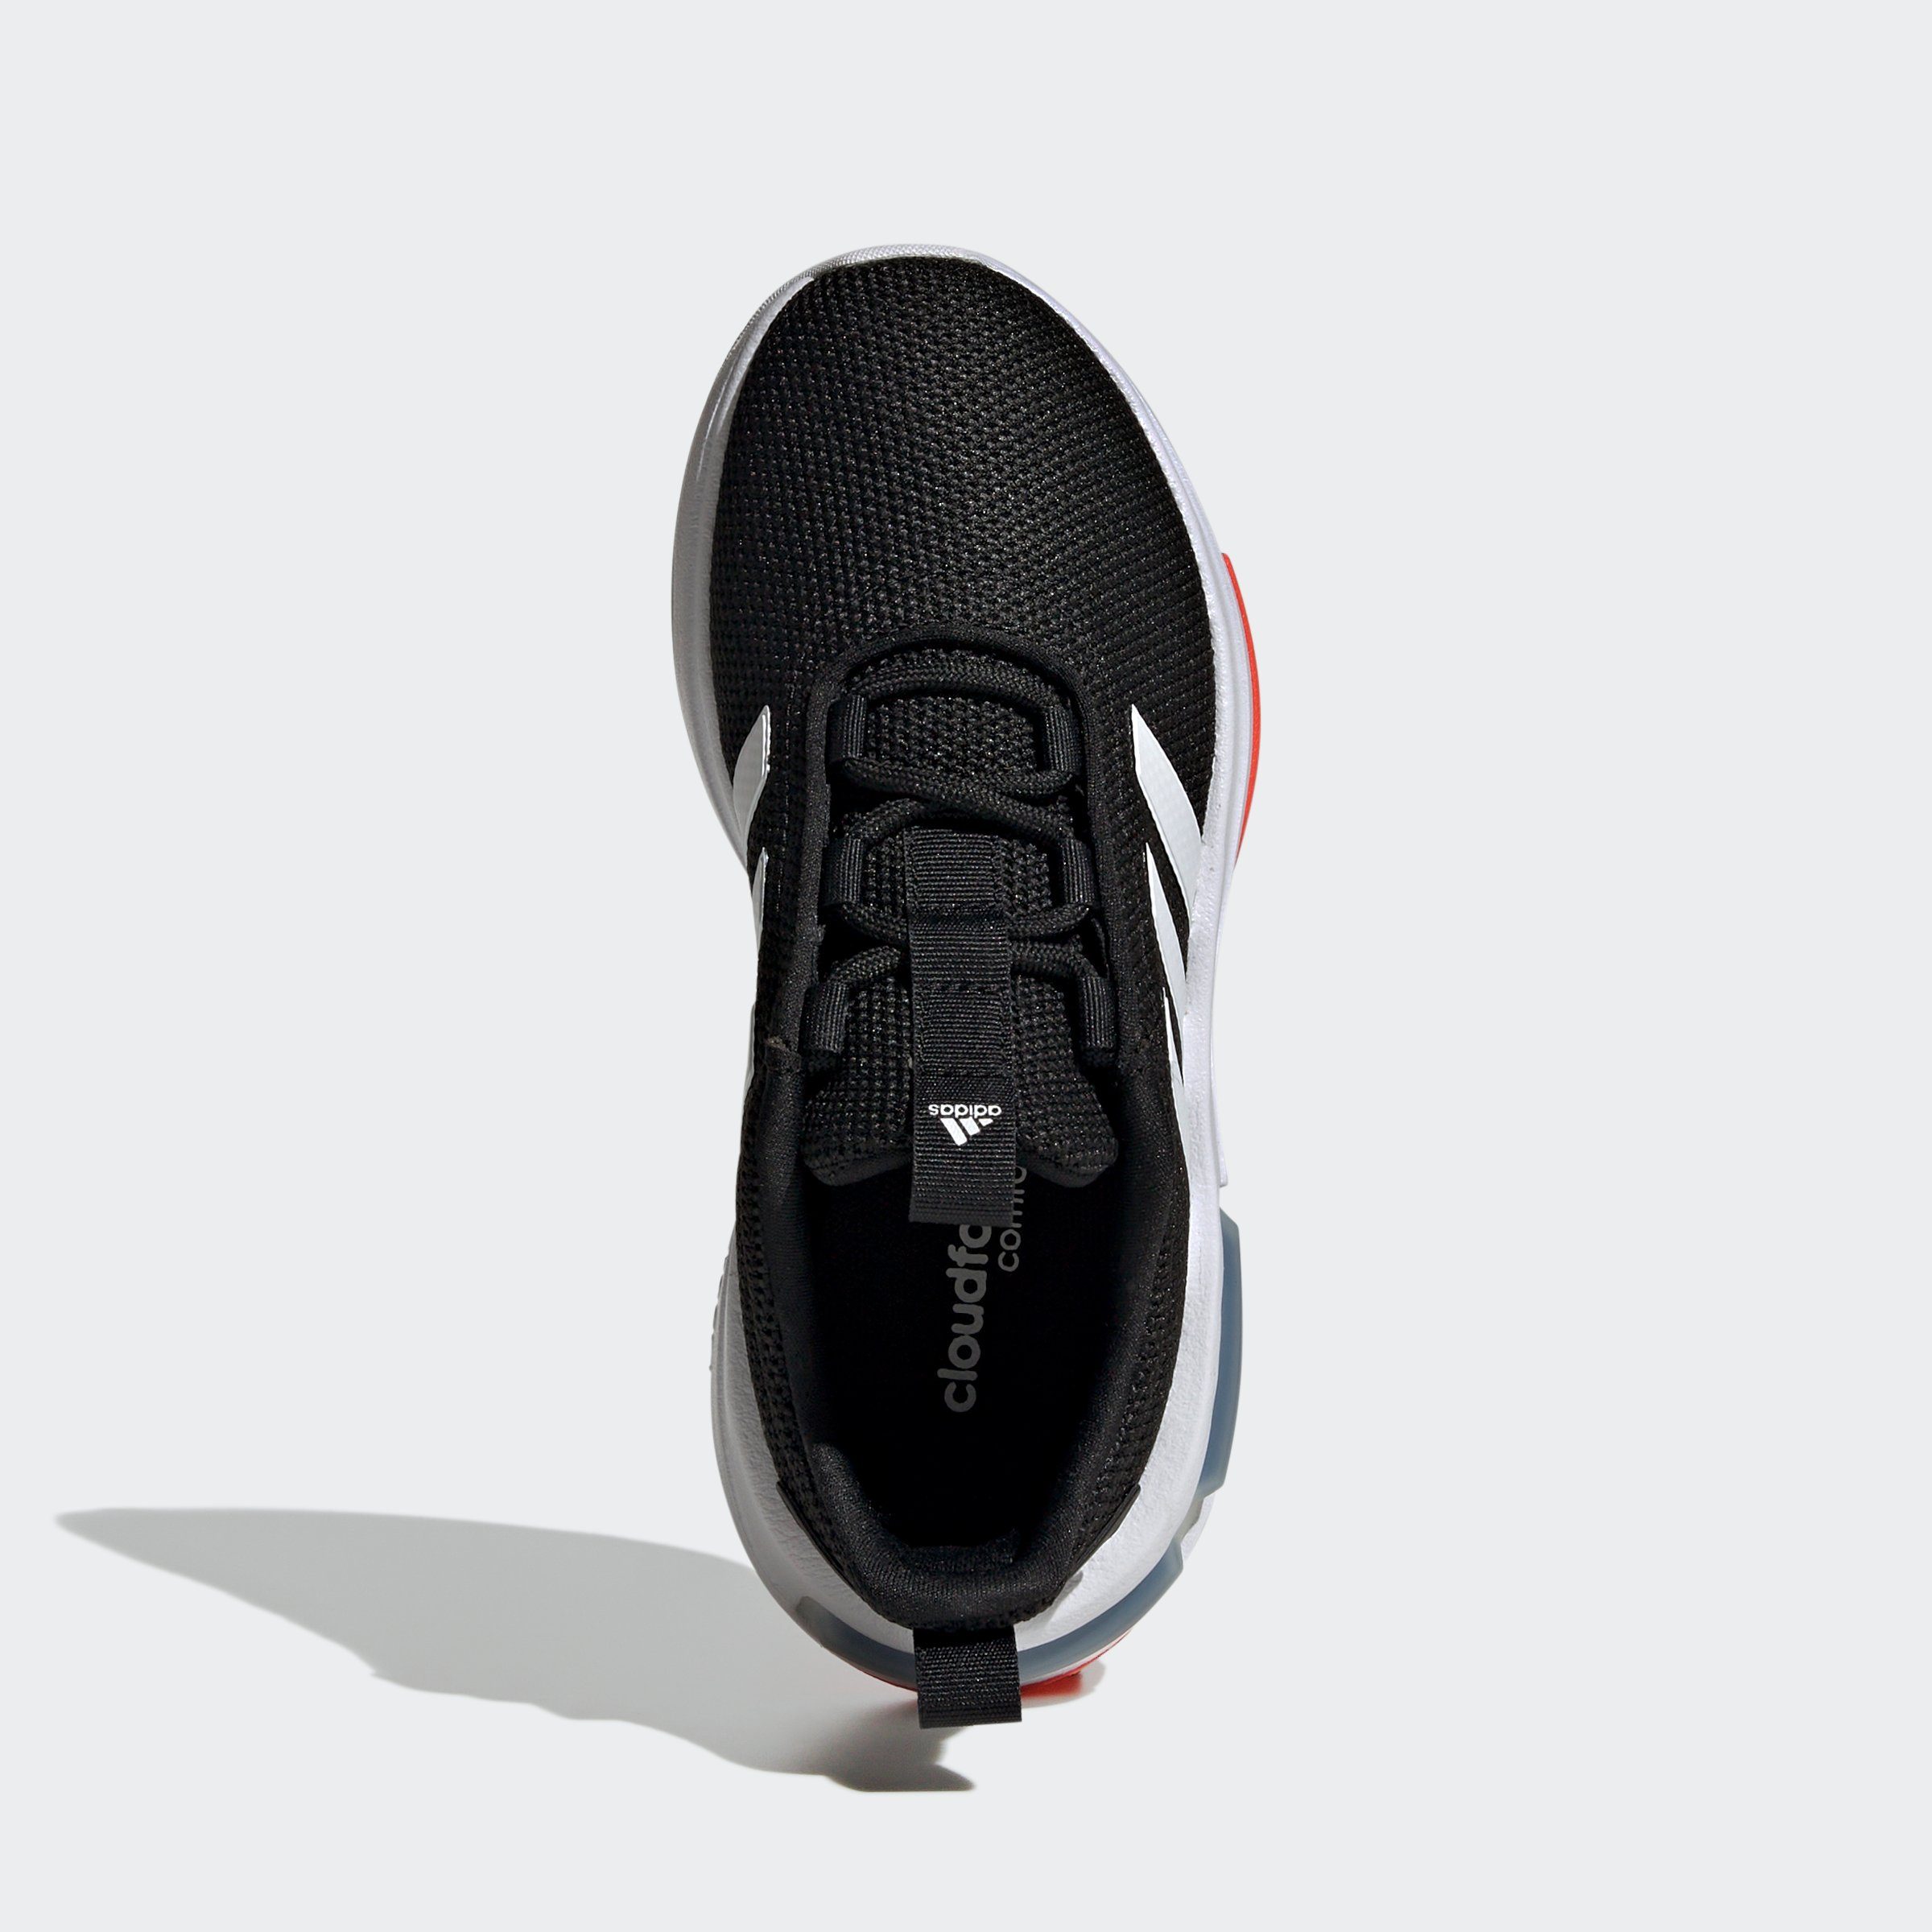 CBLACK/FTWWHT/SOLRED TR23 Sportswear adidas KIDS Sneaker RACER